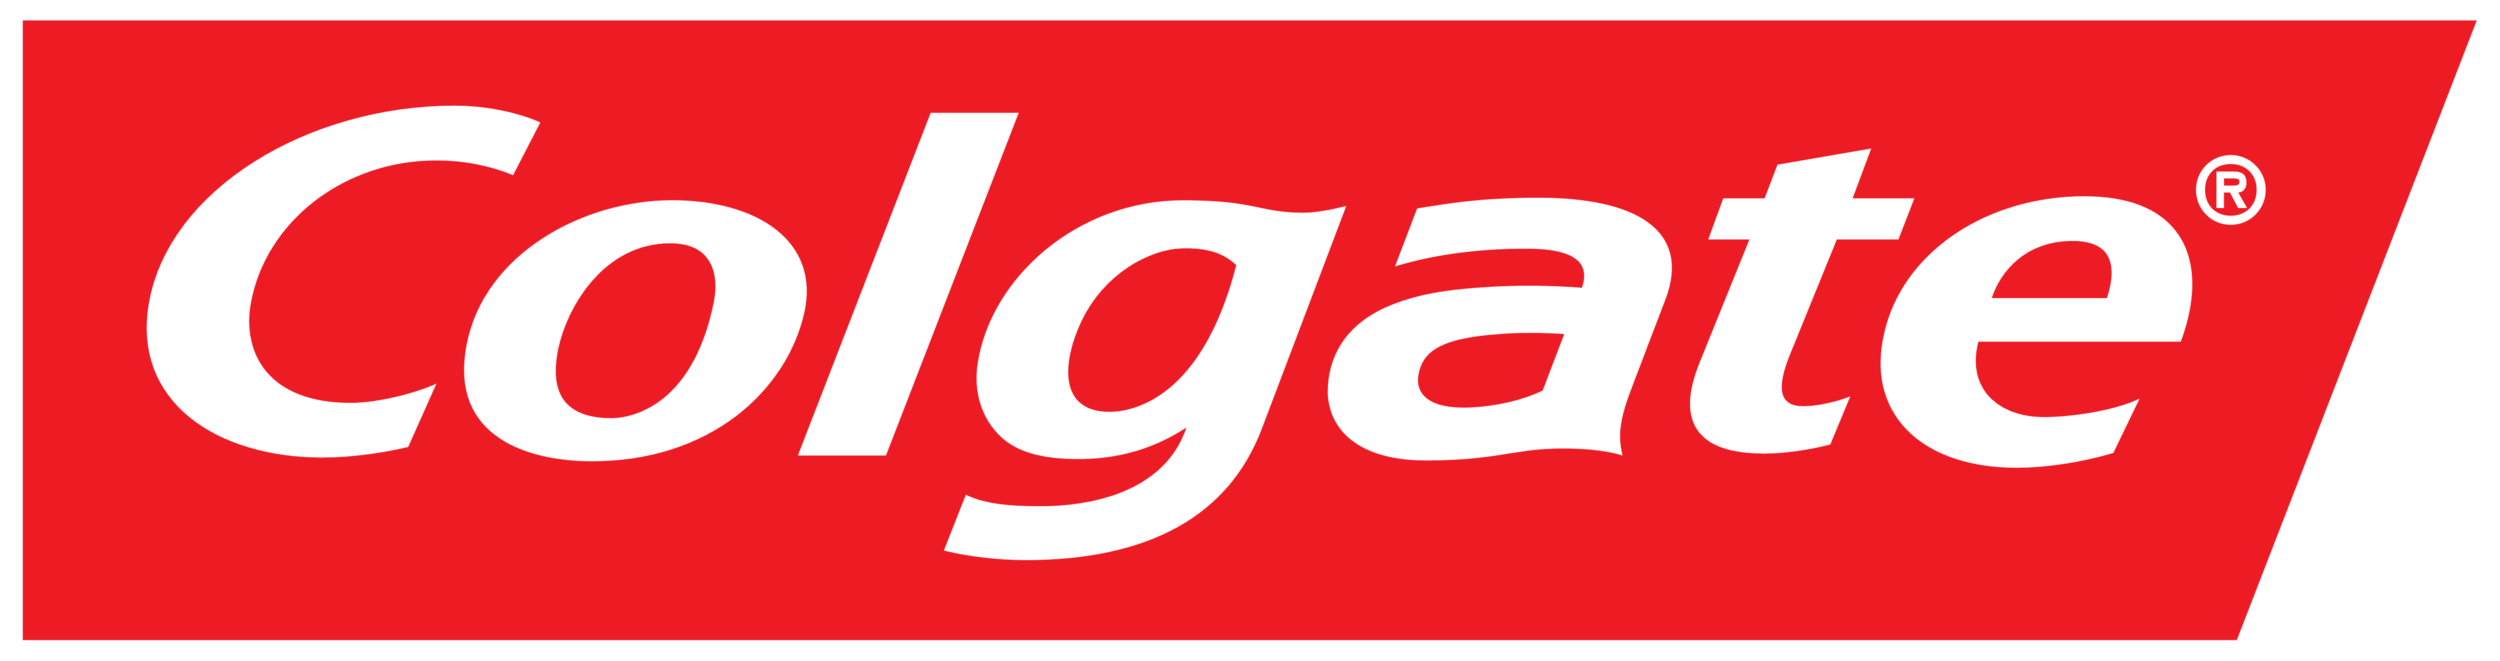 PNGPIX-COM-Colgate-Logo-PNG-Transparent.png